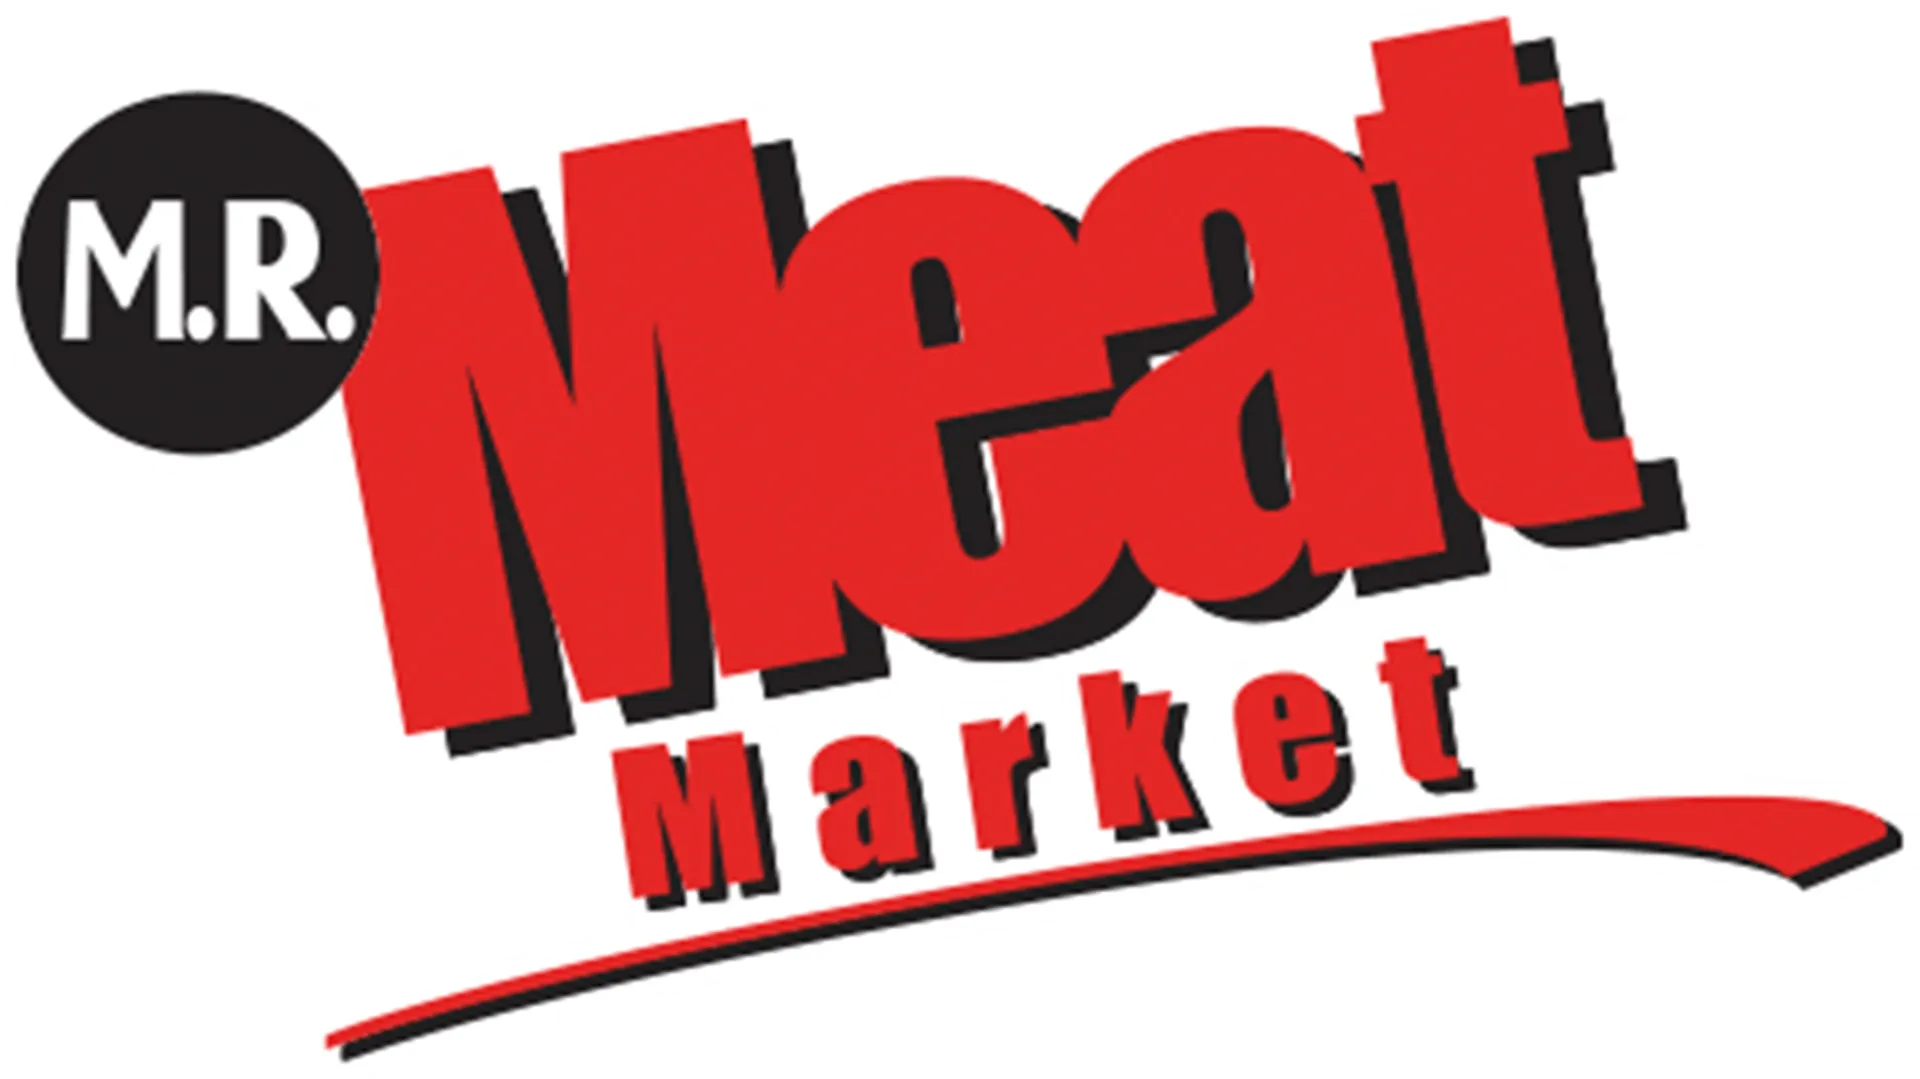 MR. MEAT MARKET logo